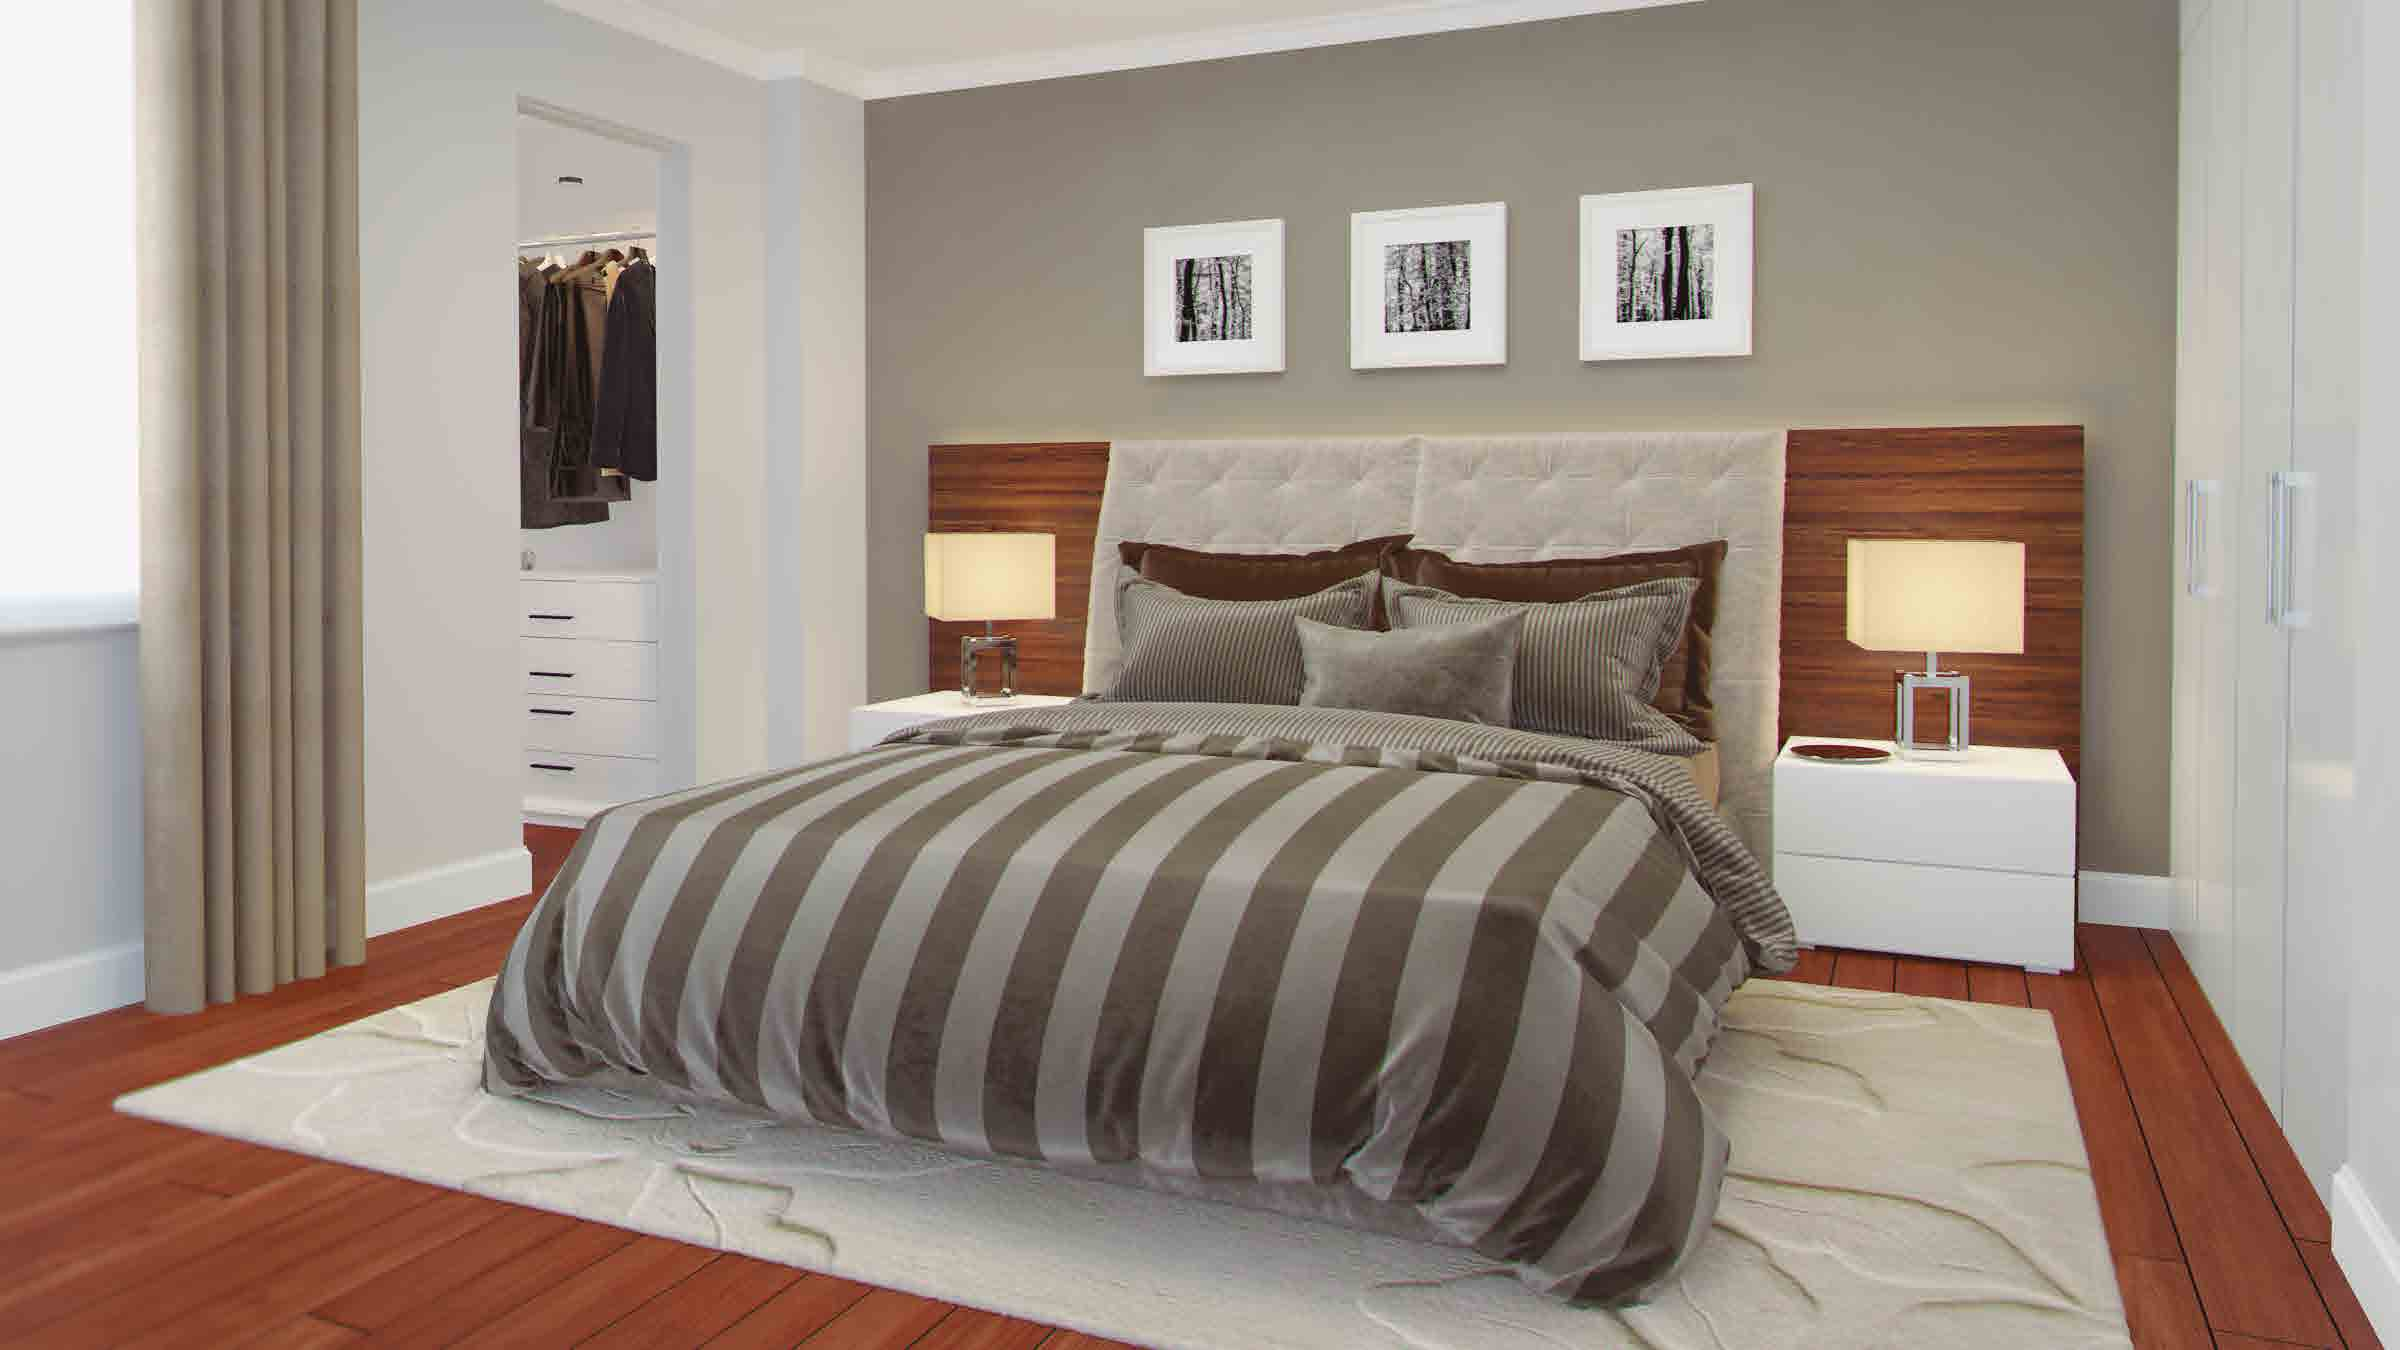 AMPLIO CONFORT Dormitorio principal que combina líneas contemporáneas con acabados superiores, que priorizan la presencia de texturas y materiales naturales de tendencia que se